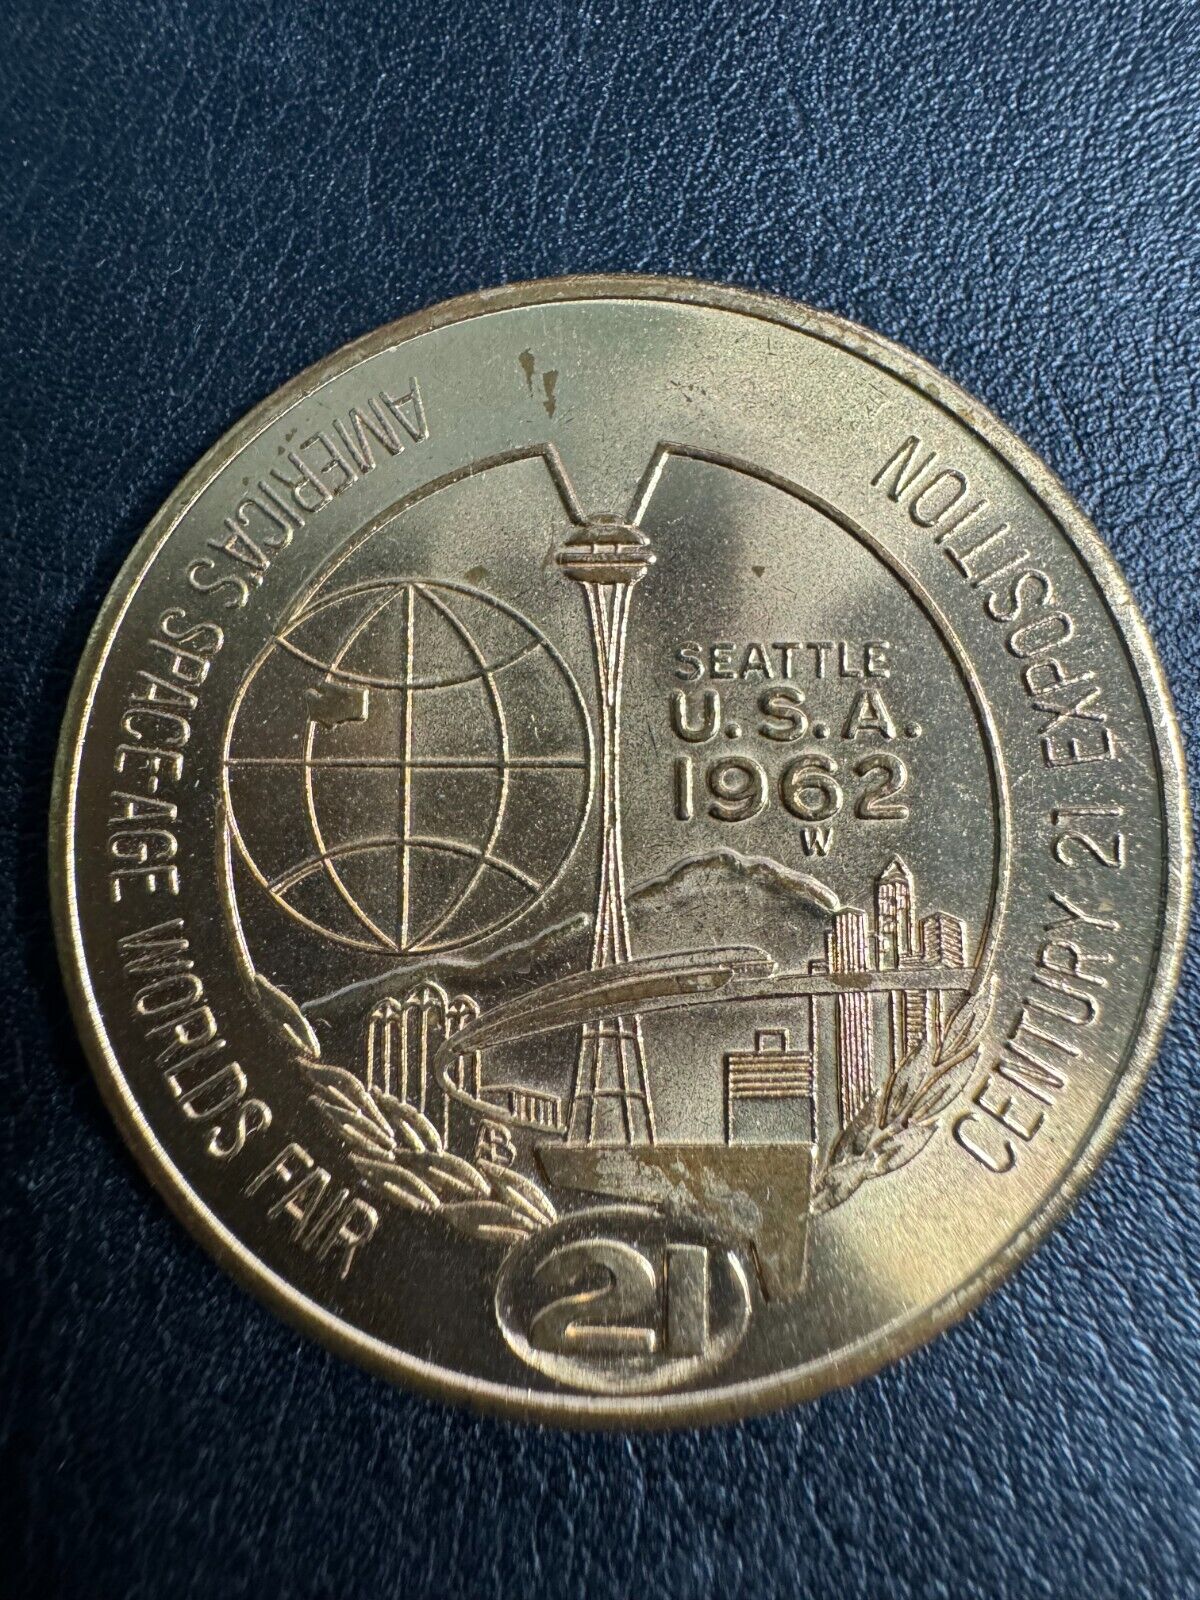 1962 Seattle Worlds Fair $1 Trade Token Century 21 Exposition Souvenir Coin WA 